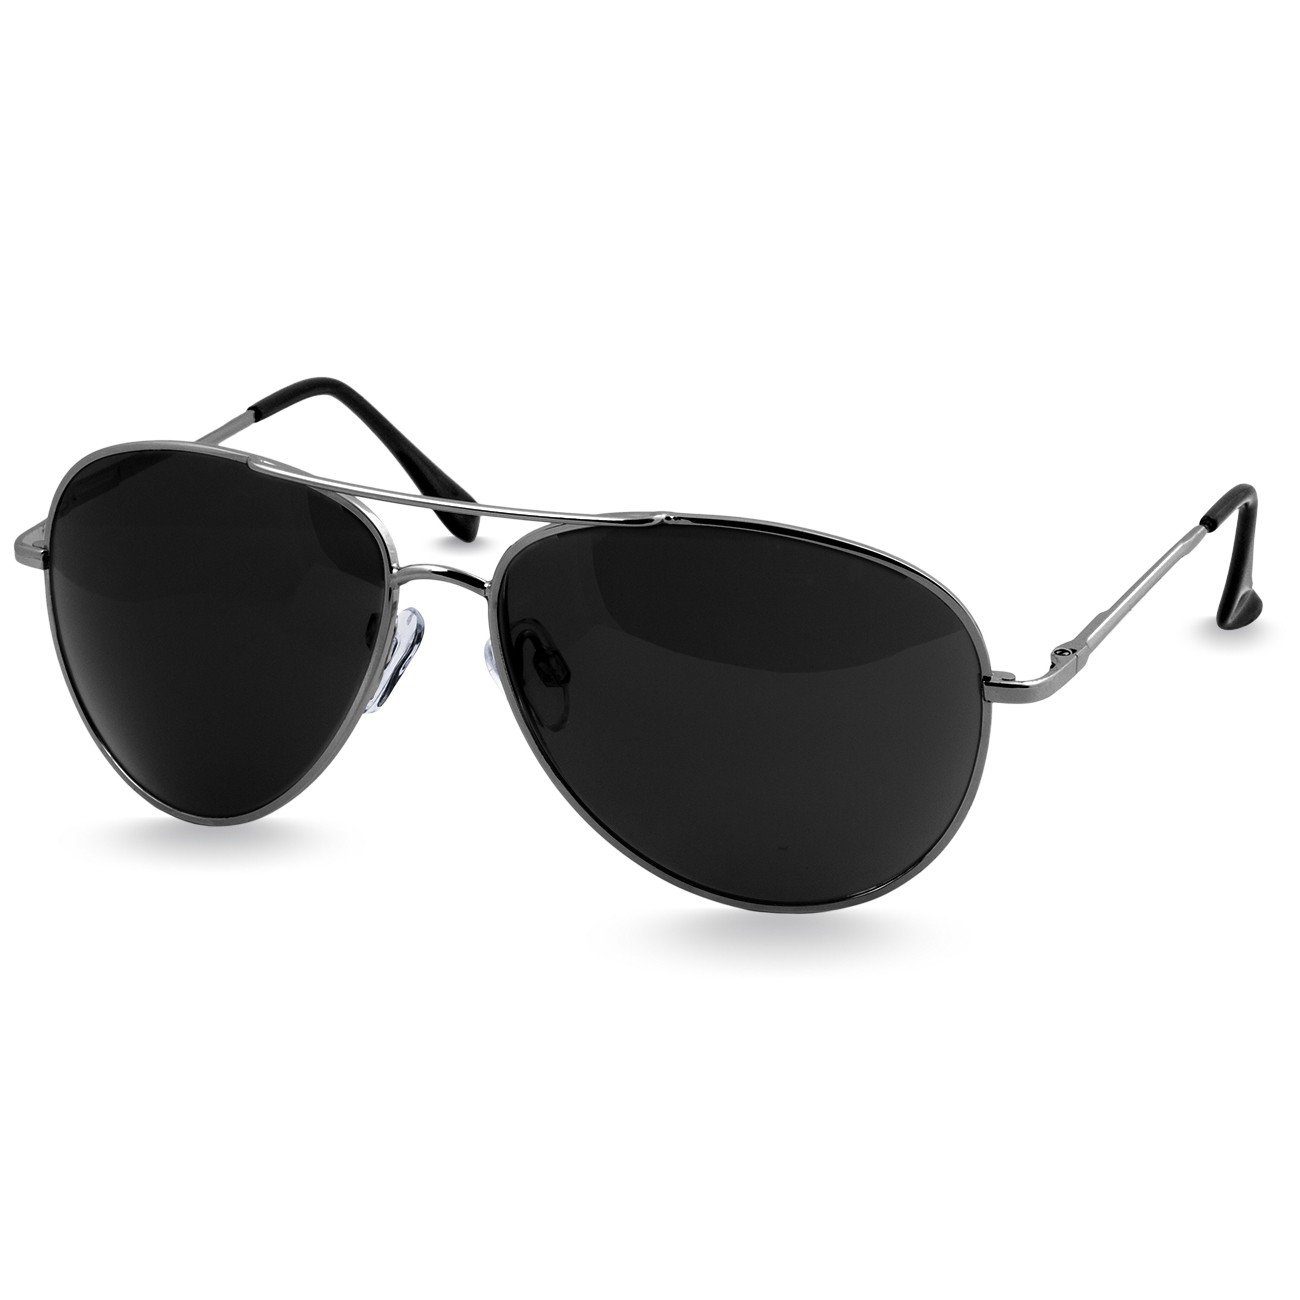 Caspar Sonnenbrille / Unisex Retro silber schwarz SG013 Pilotenbrille klassische